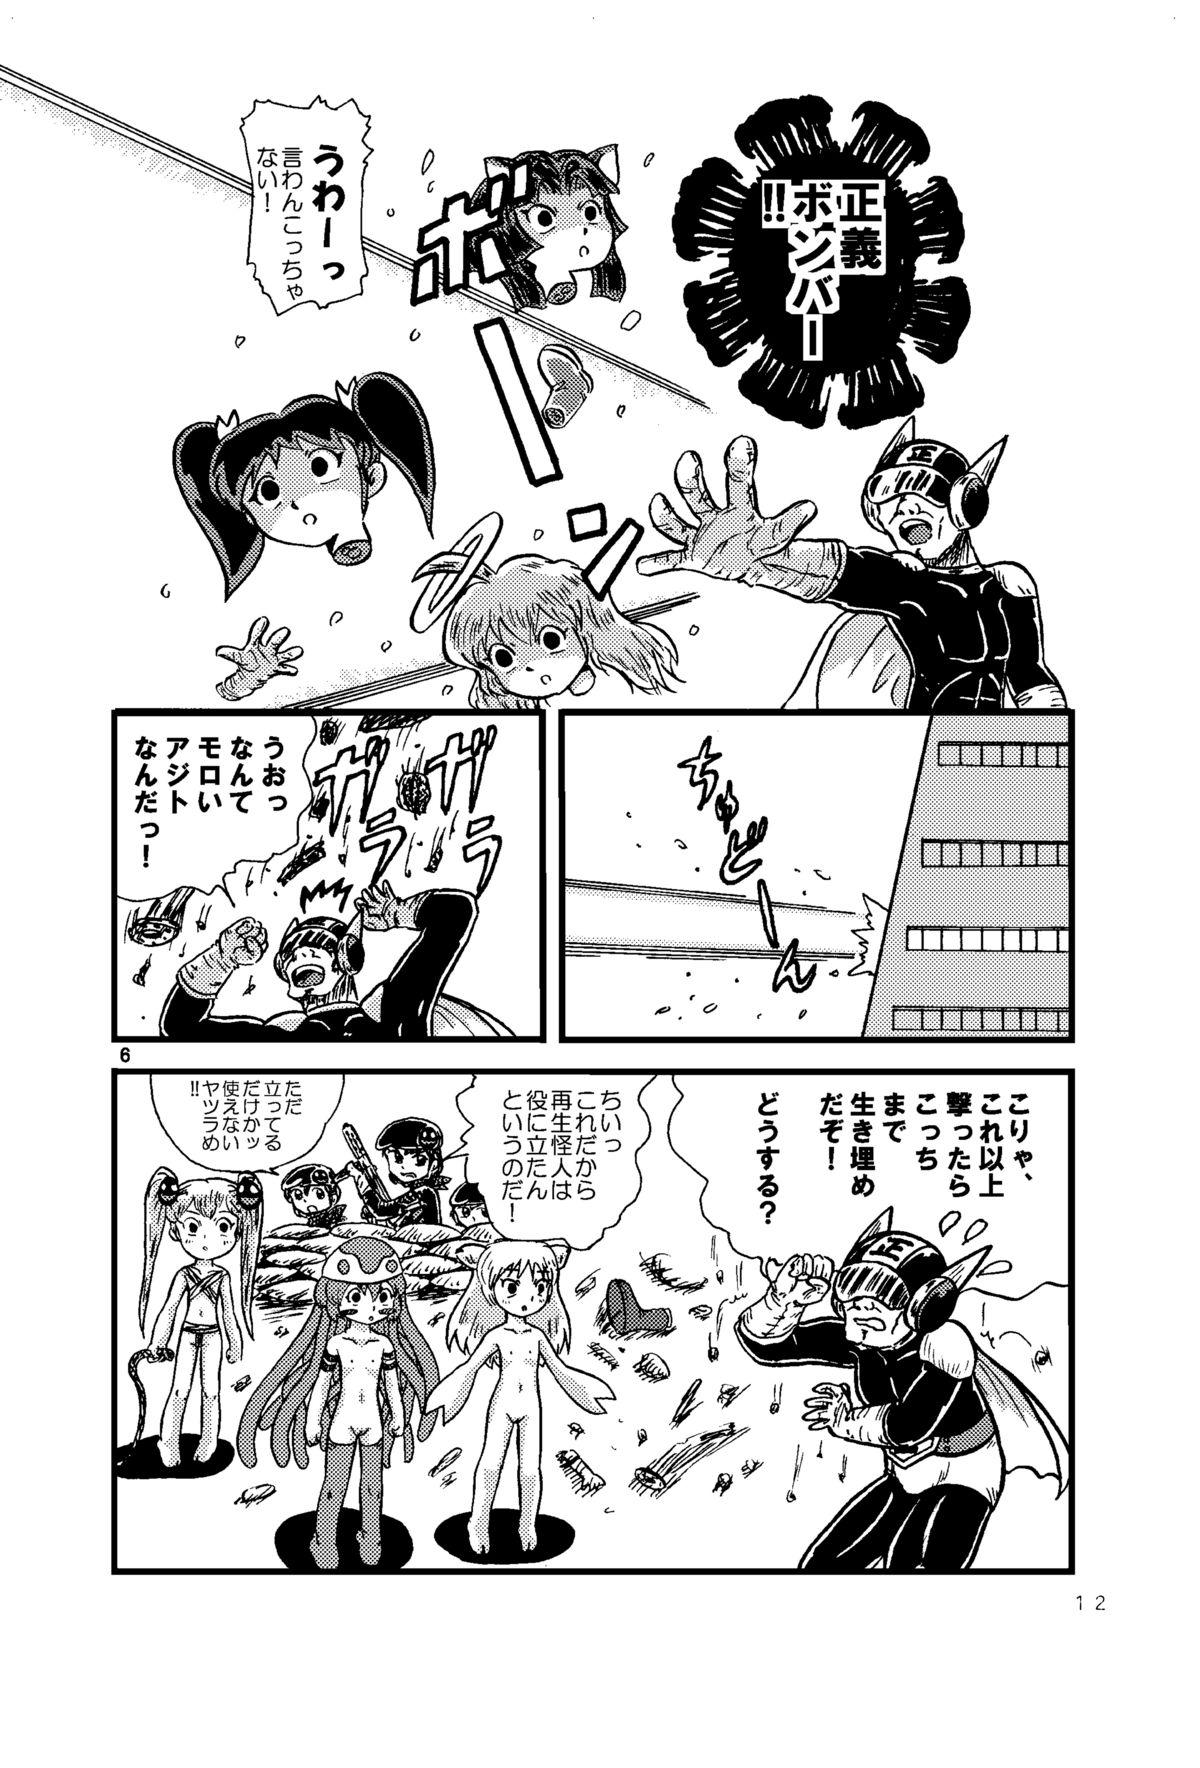 Groupsex Tsurupeta Kenkyuu Houkokusho 005 "Dengeki Jigoku" - Turupeta Research Report Culona - Page 11